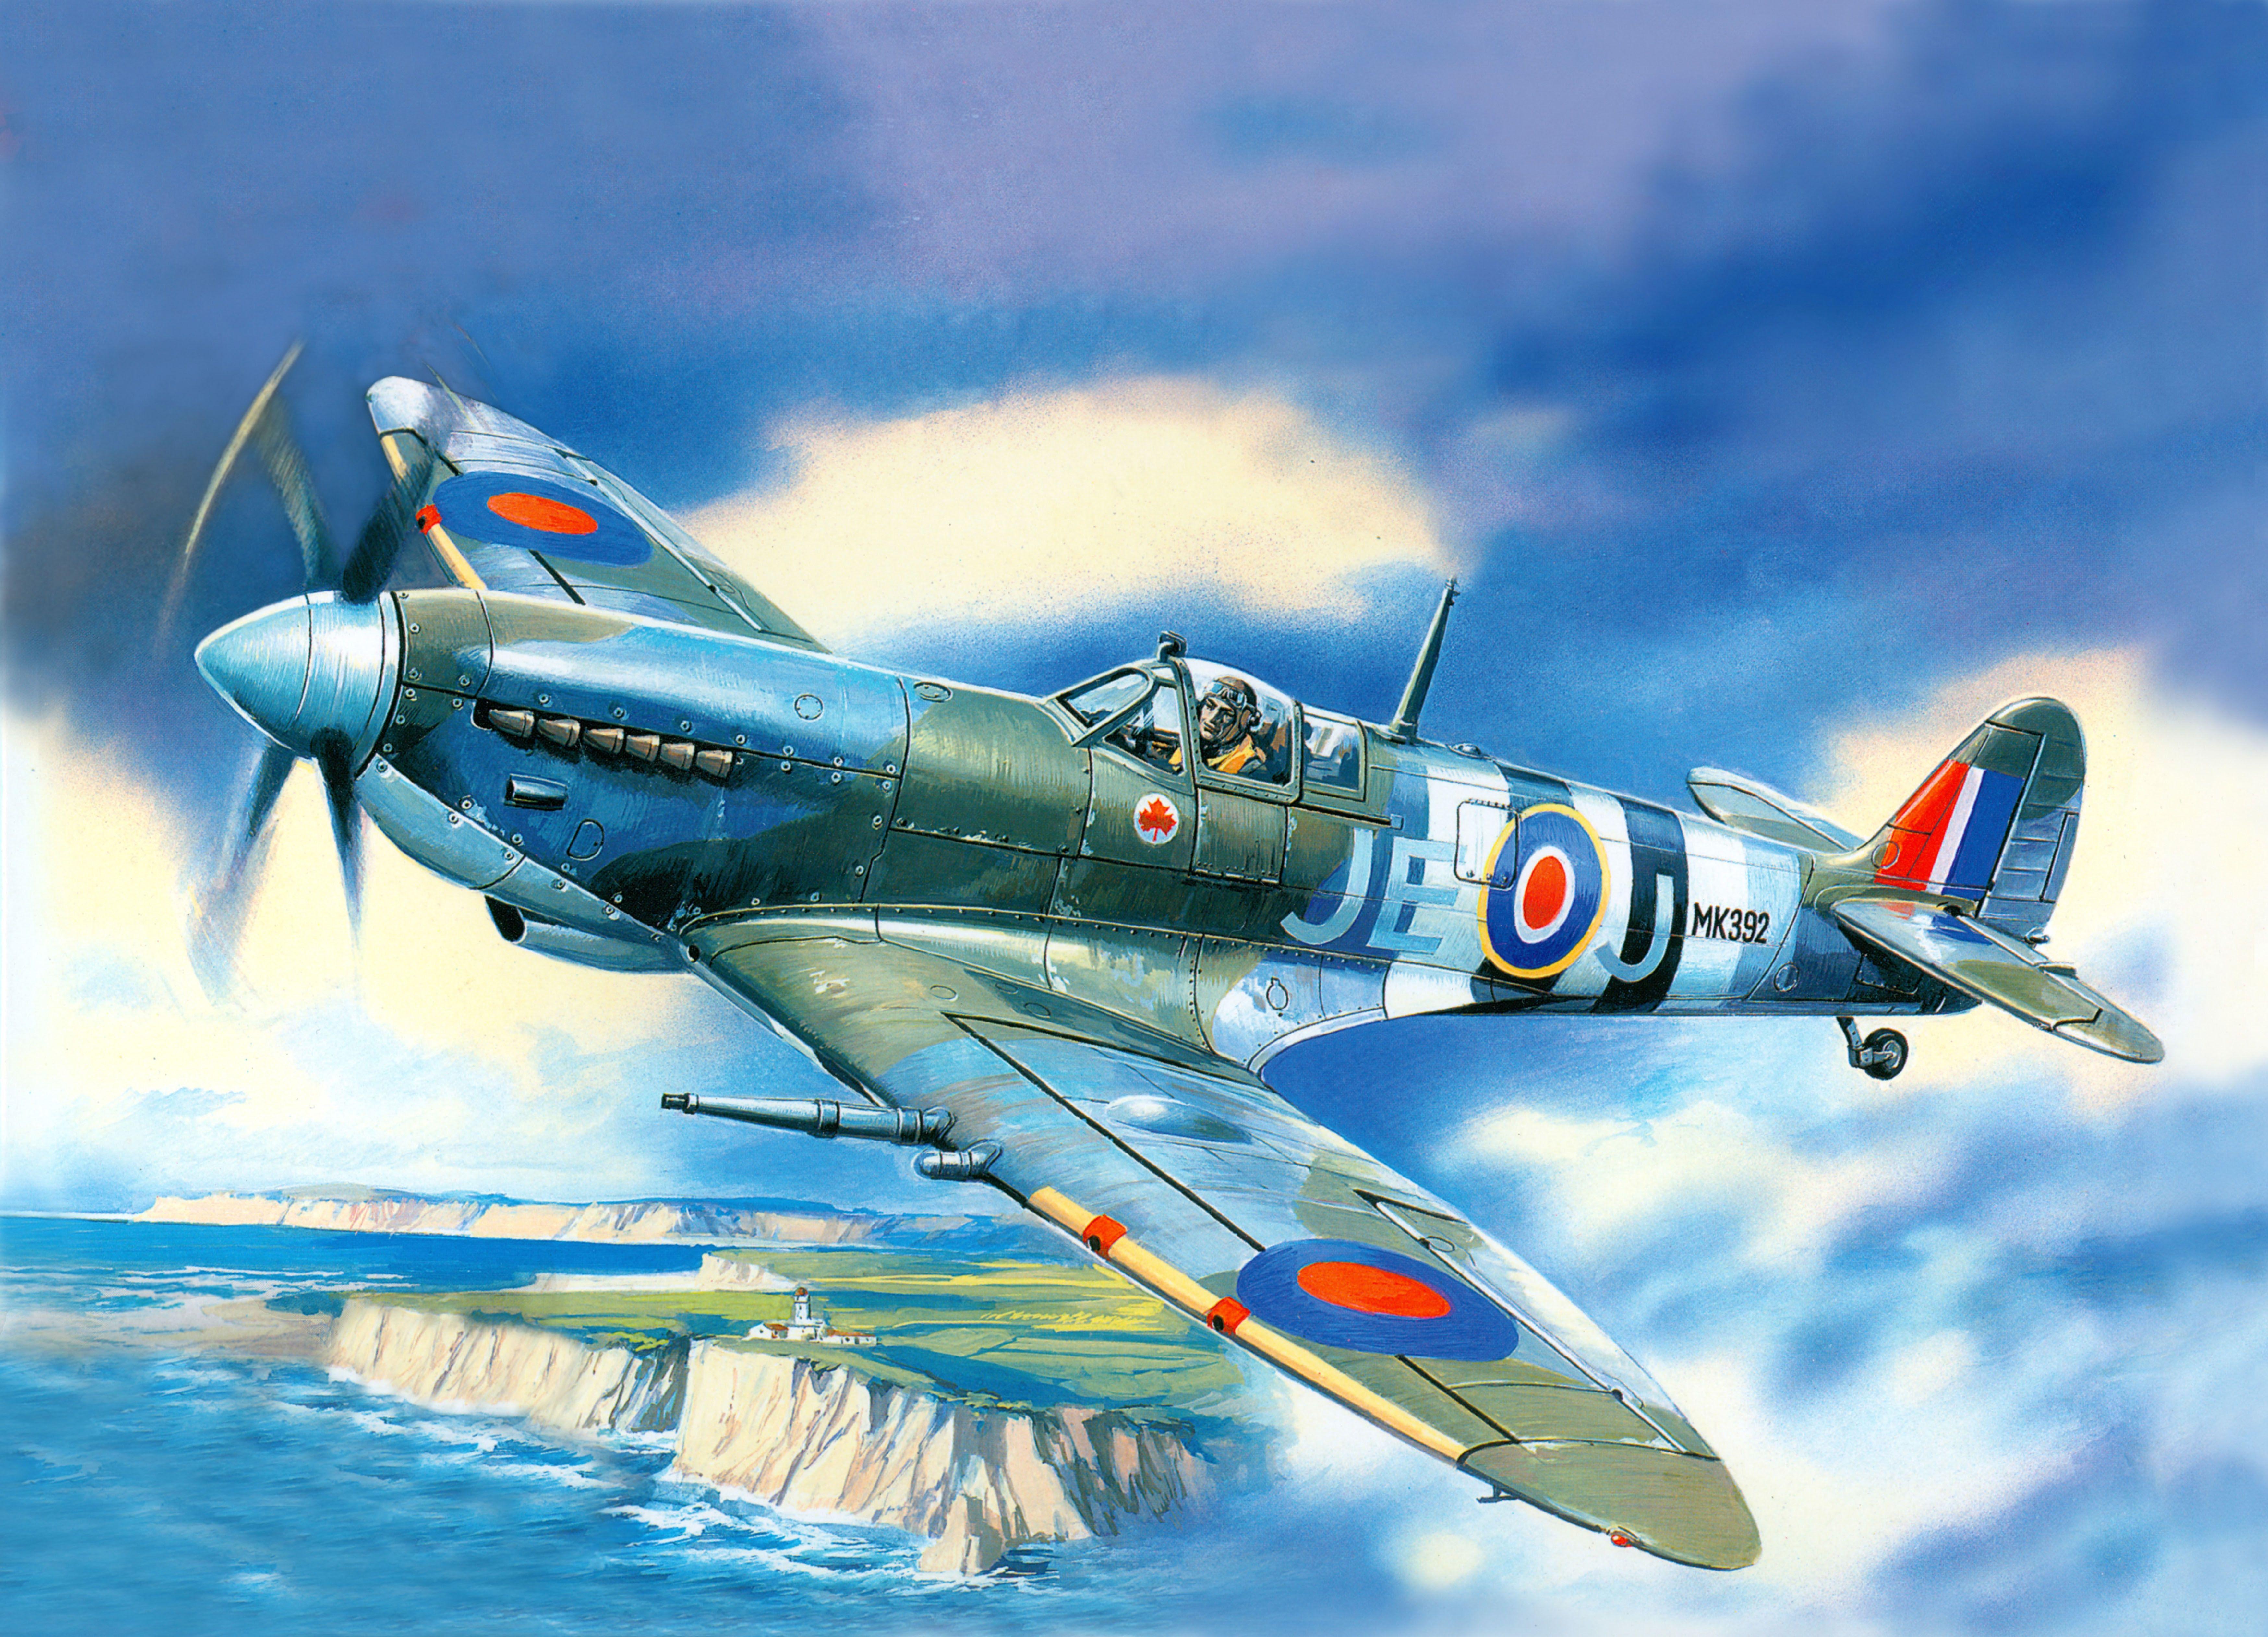 Supermarine Spitfire wallpaper Aircraft wallpaper. HD Wallpaper